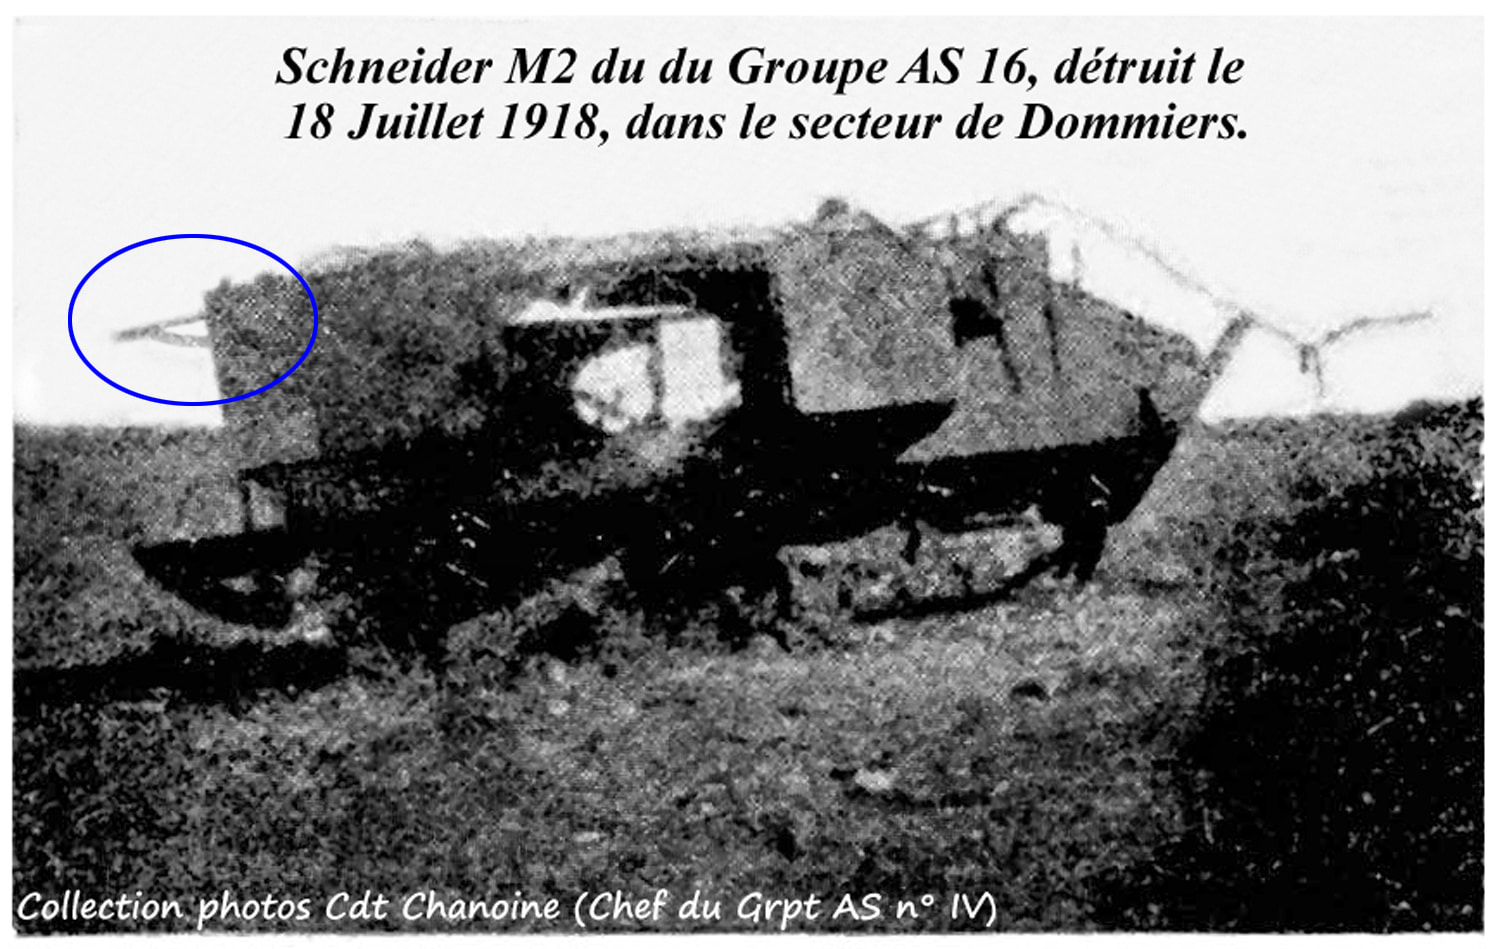 11 - AS 16 - Schneider M2 Asxxx détruit à Dommiers-min.jpg